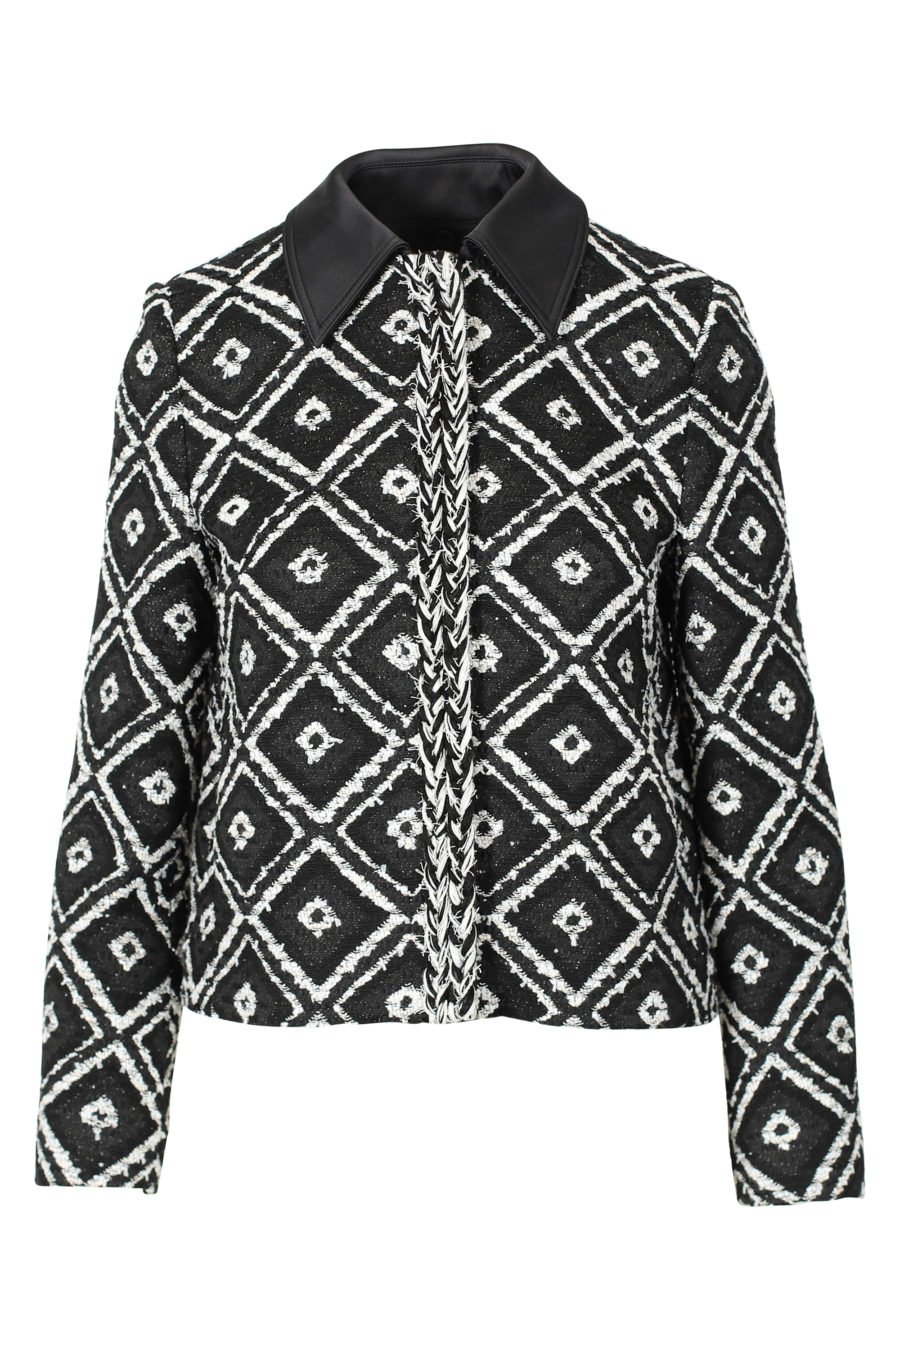 Black and white geometric jacket "Boucle" - IMG 3116